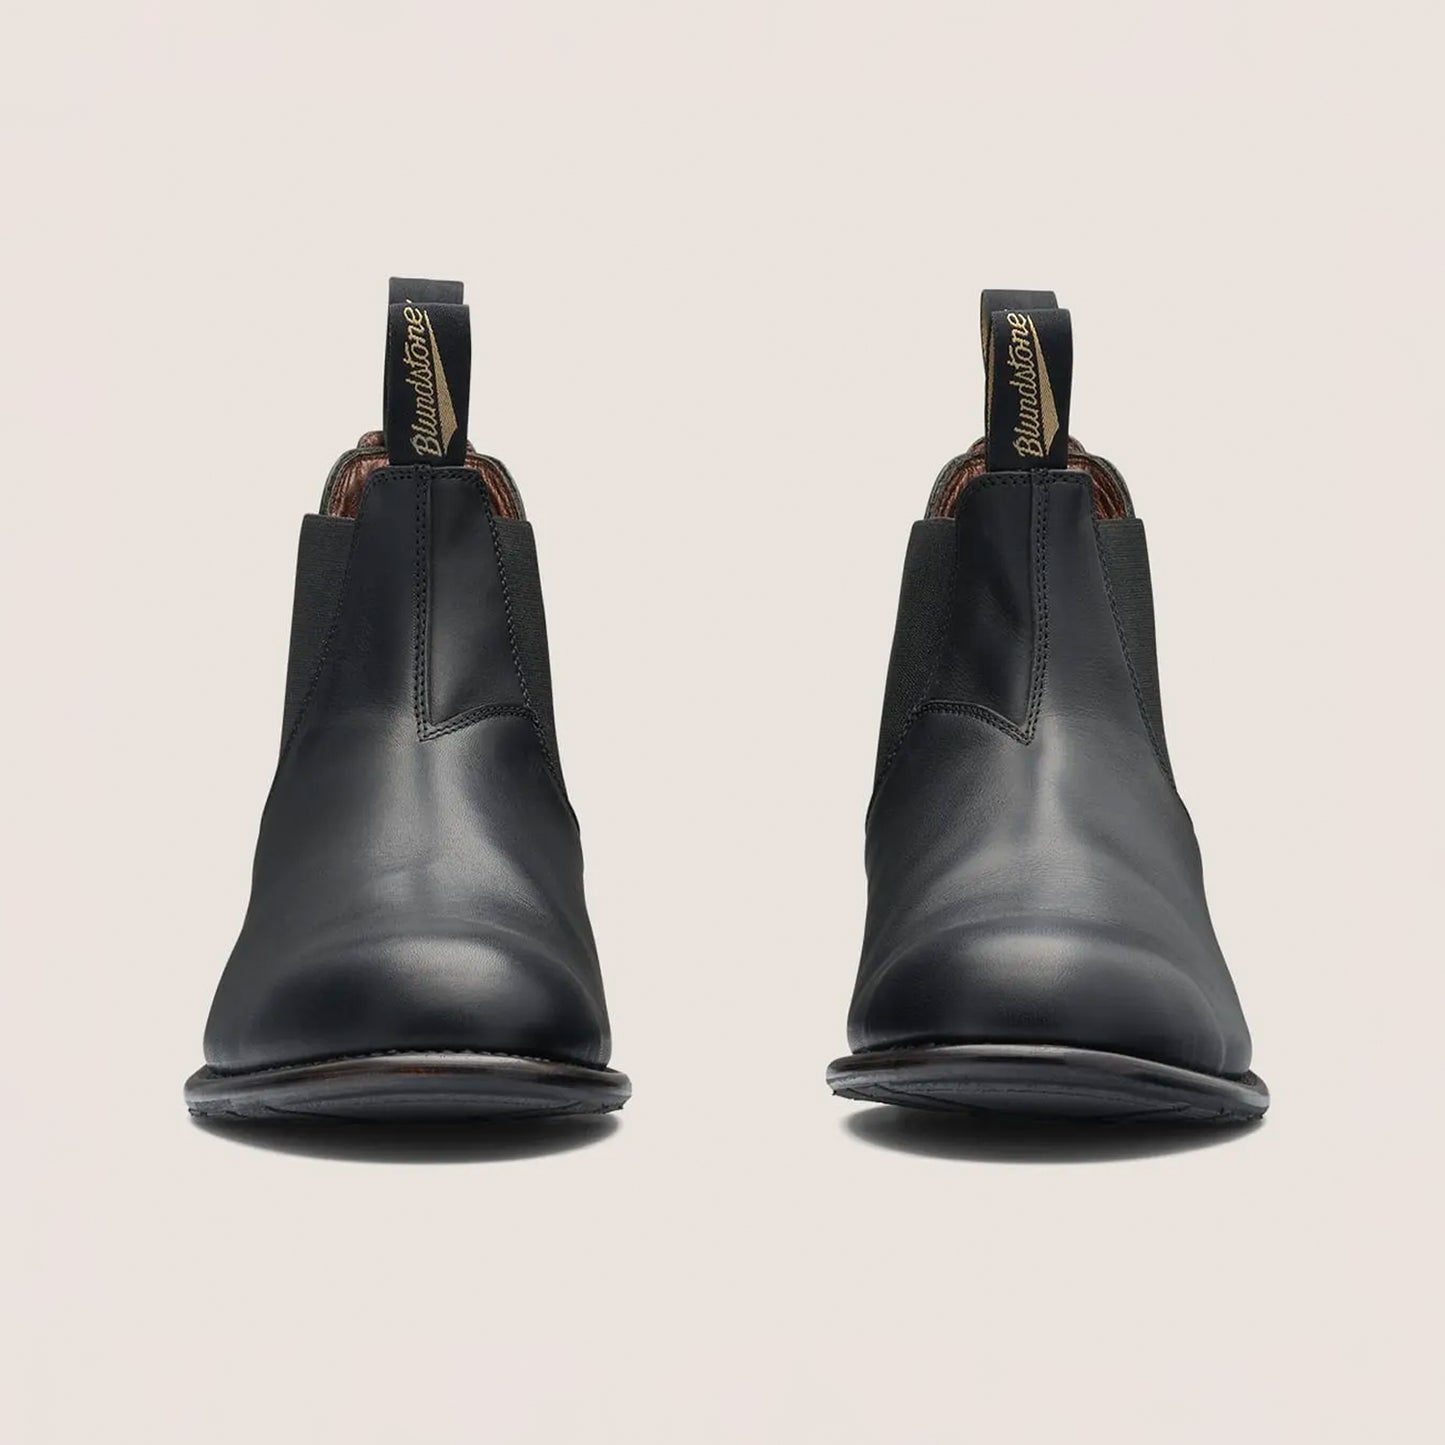 Blundstone - 152 Men's Heritage Chelsea Boot - Black